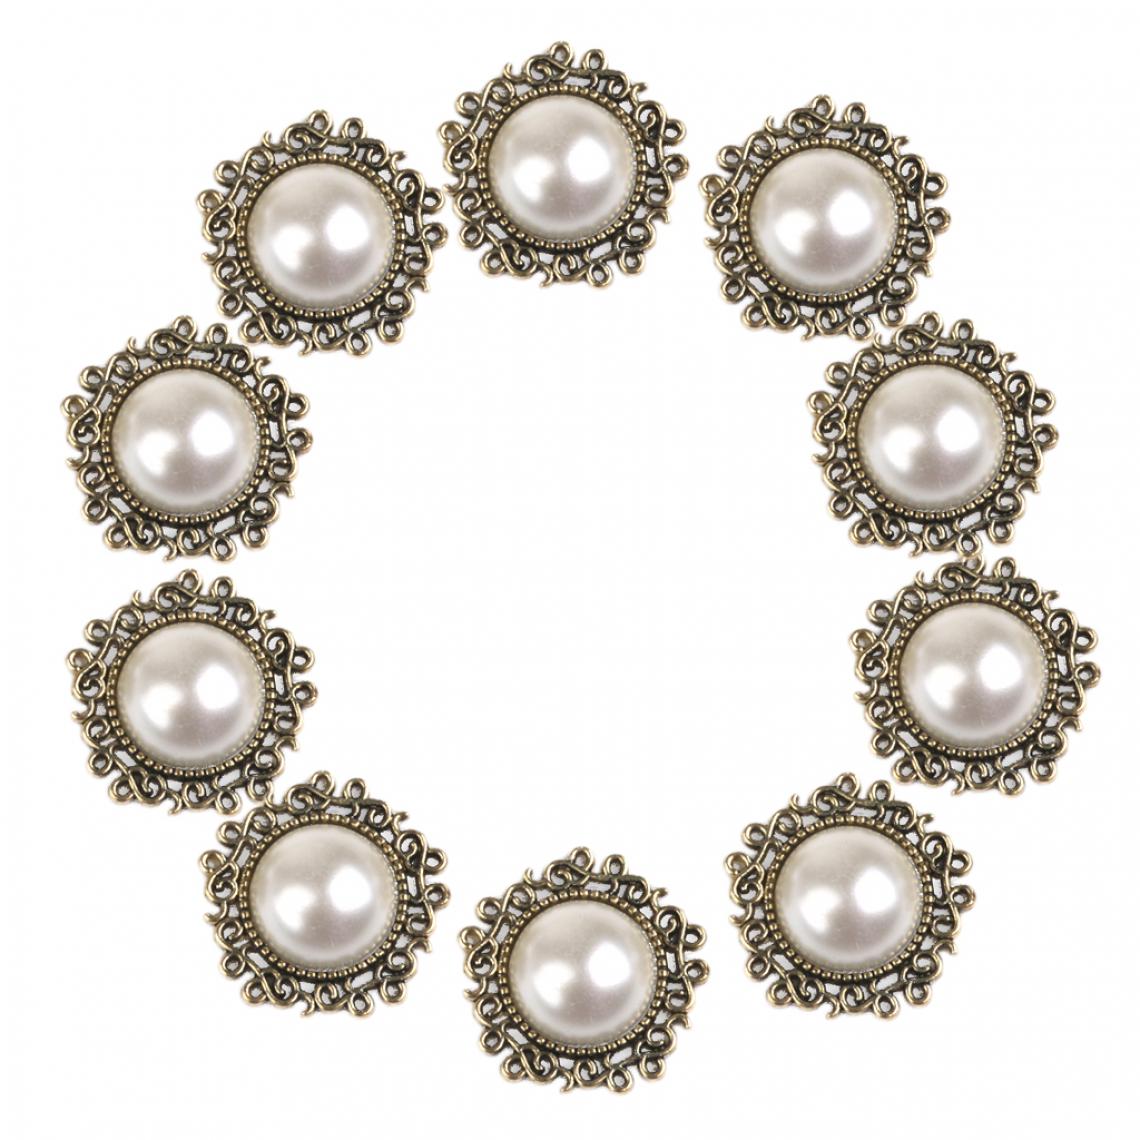 marque generique - Phenovo Lot de 10pcs Boutons Perles Plats Décoration Bricolage Couture Diy 25mm - Beige - Poignée de meuble